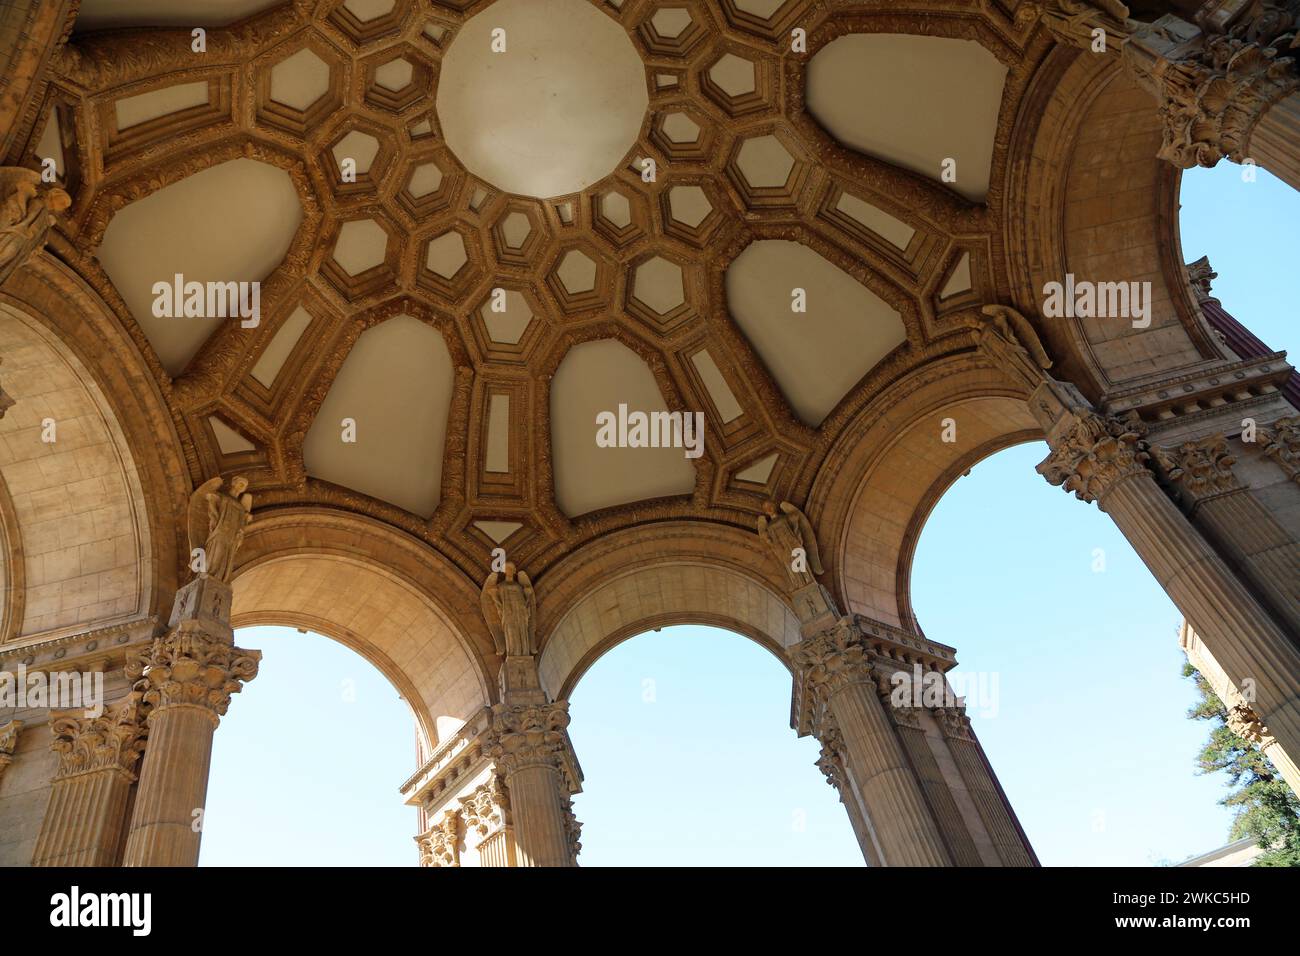 Underside of the rotunda - The Palace of Fine Arts, San Francisco, California Stock Photo